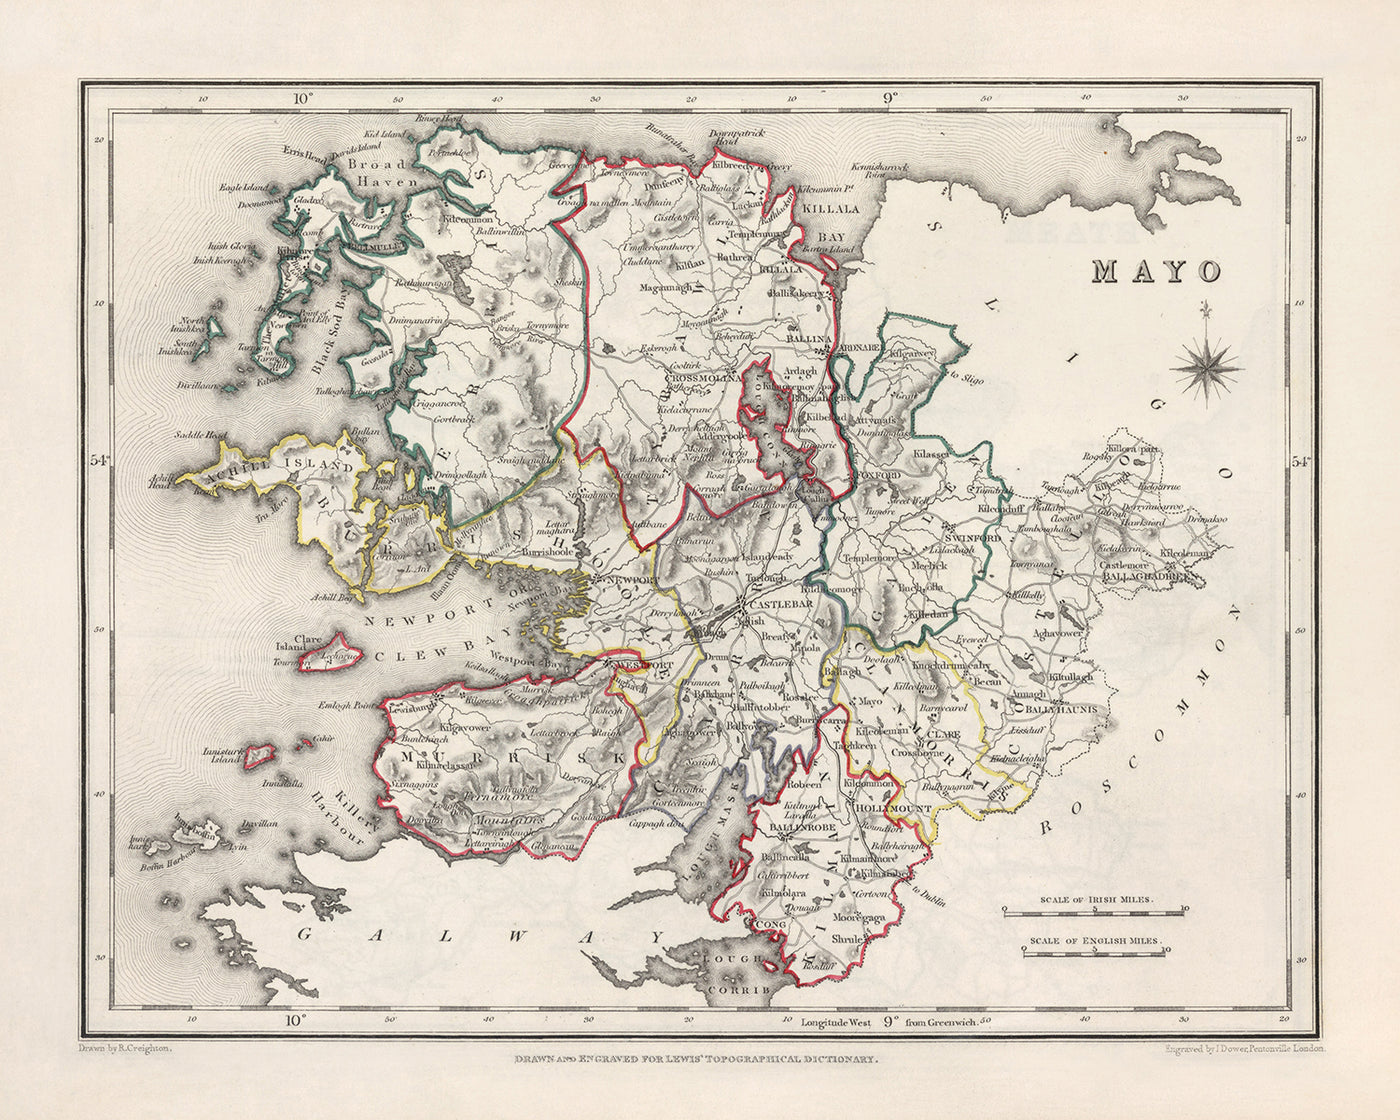 Alte Karte der Grafschaft Mayo von Samuel Lewis, 1844: Westport, Ballina, Castlebar, Achill Island, Clew Bay